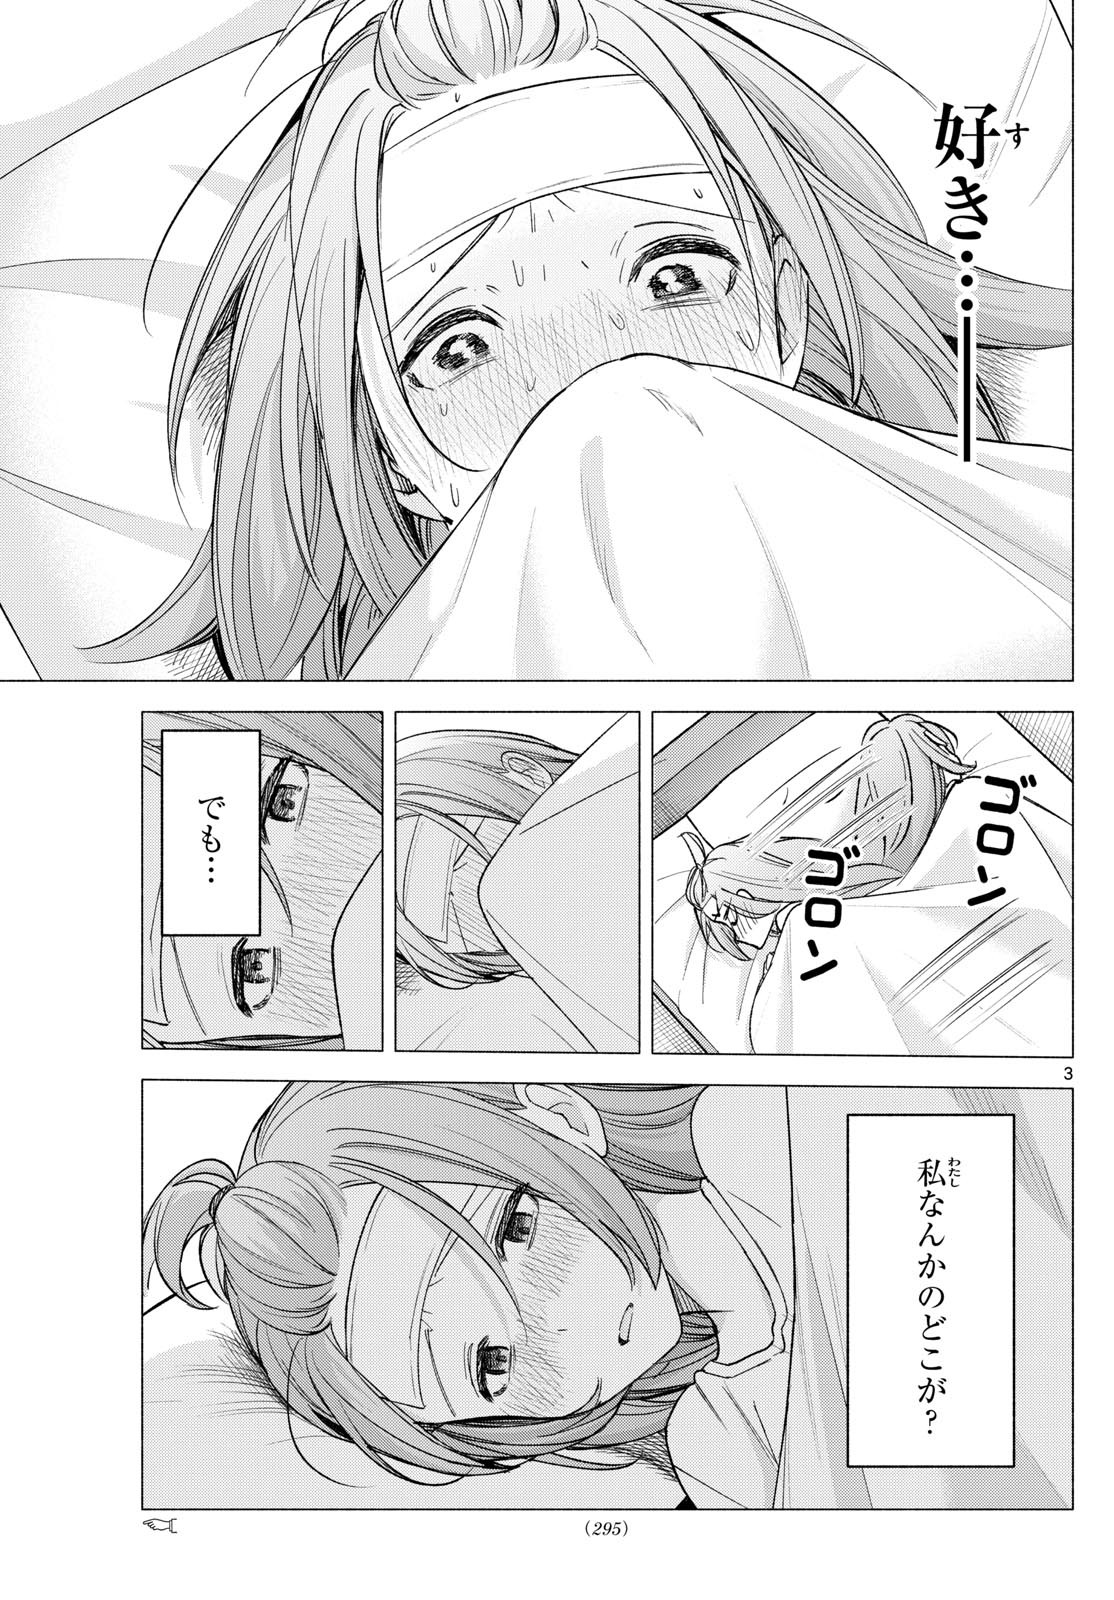 Kimi to Warui Koto ga Shitai - Chapter 058 - Page 3